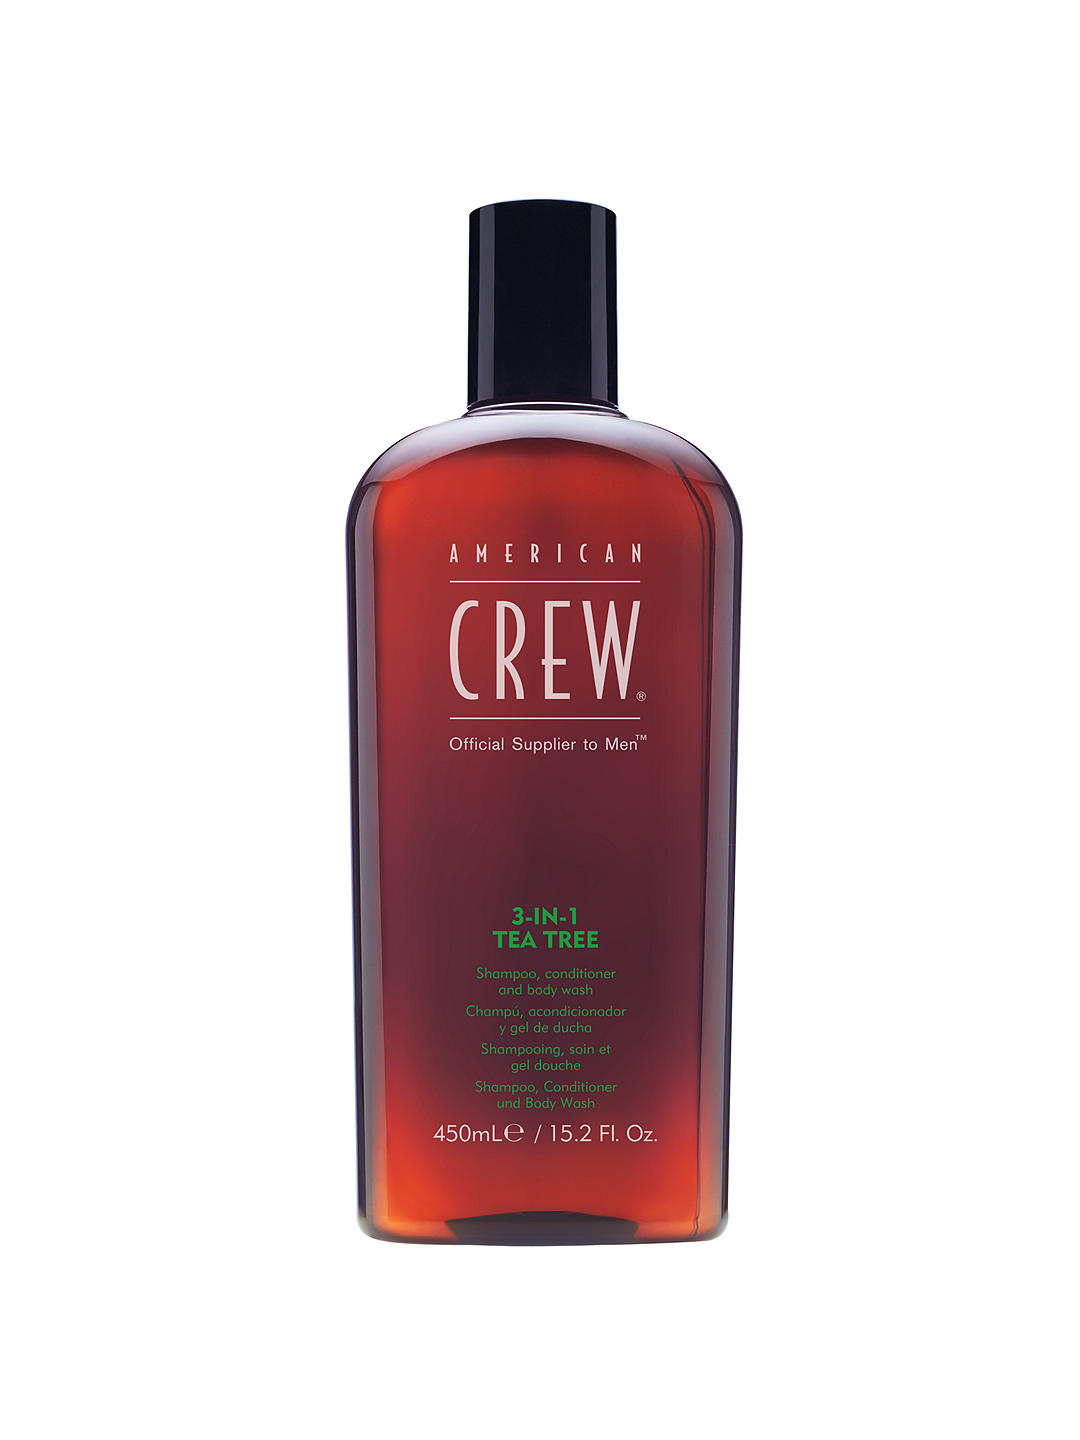 American Crew 3-In-1 Tea Tree Shampoo, Conditioner & Body Wash, 450ml 1